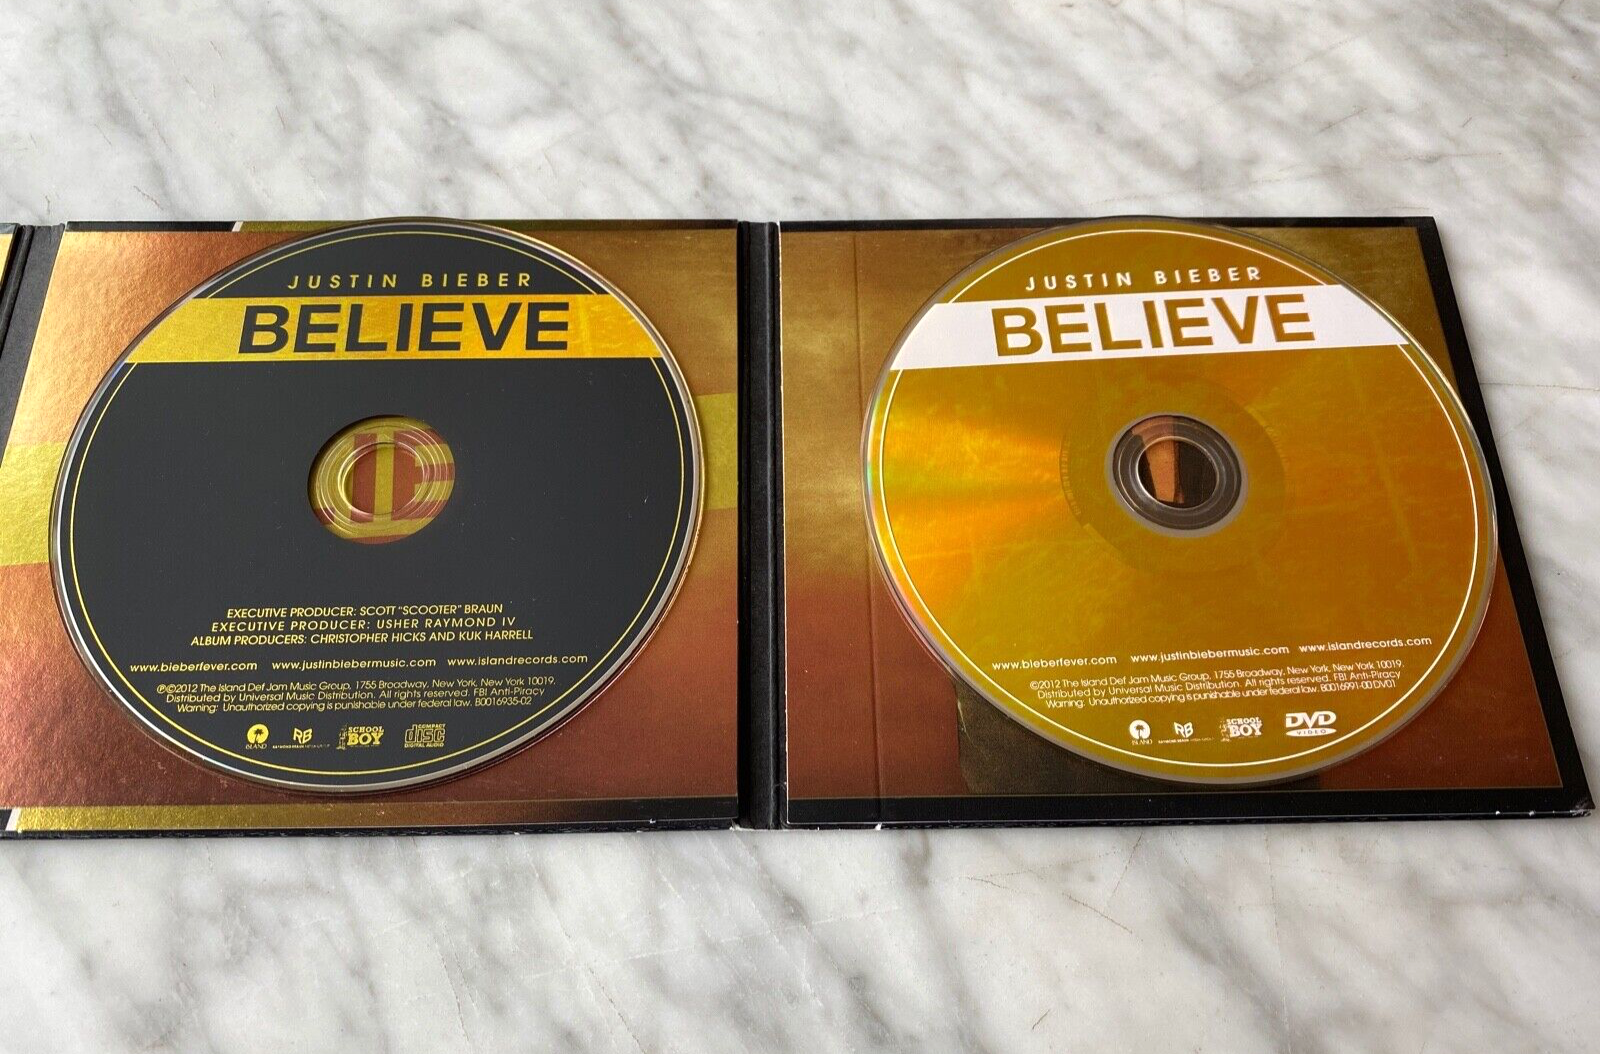 Justin Bieber Believe 2 CD/DVD TARGET EXCLUSIVE! DELUXE EDITION 2012 RARE! OOP!